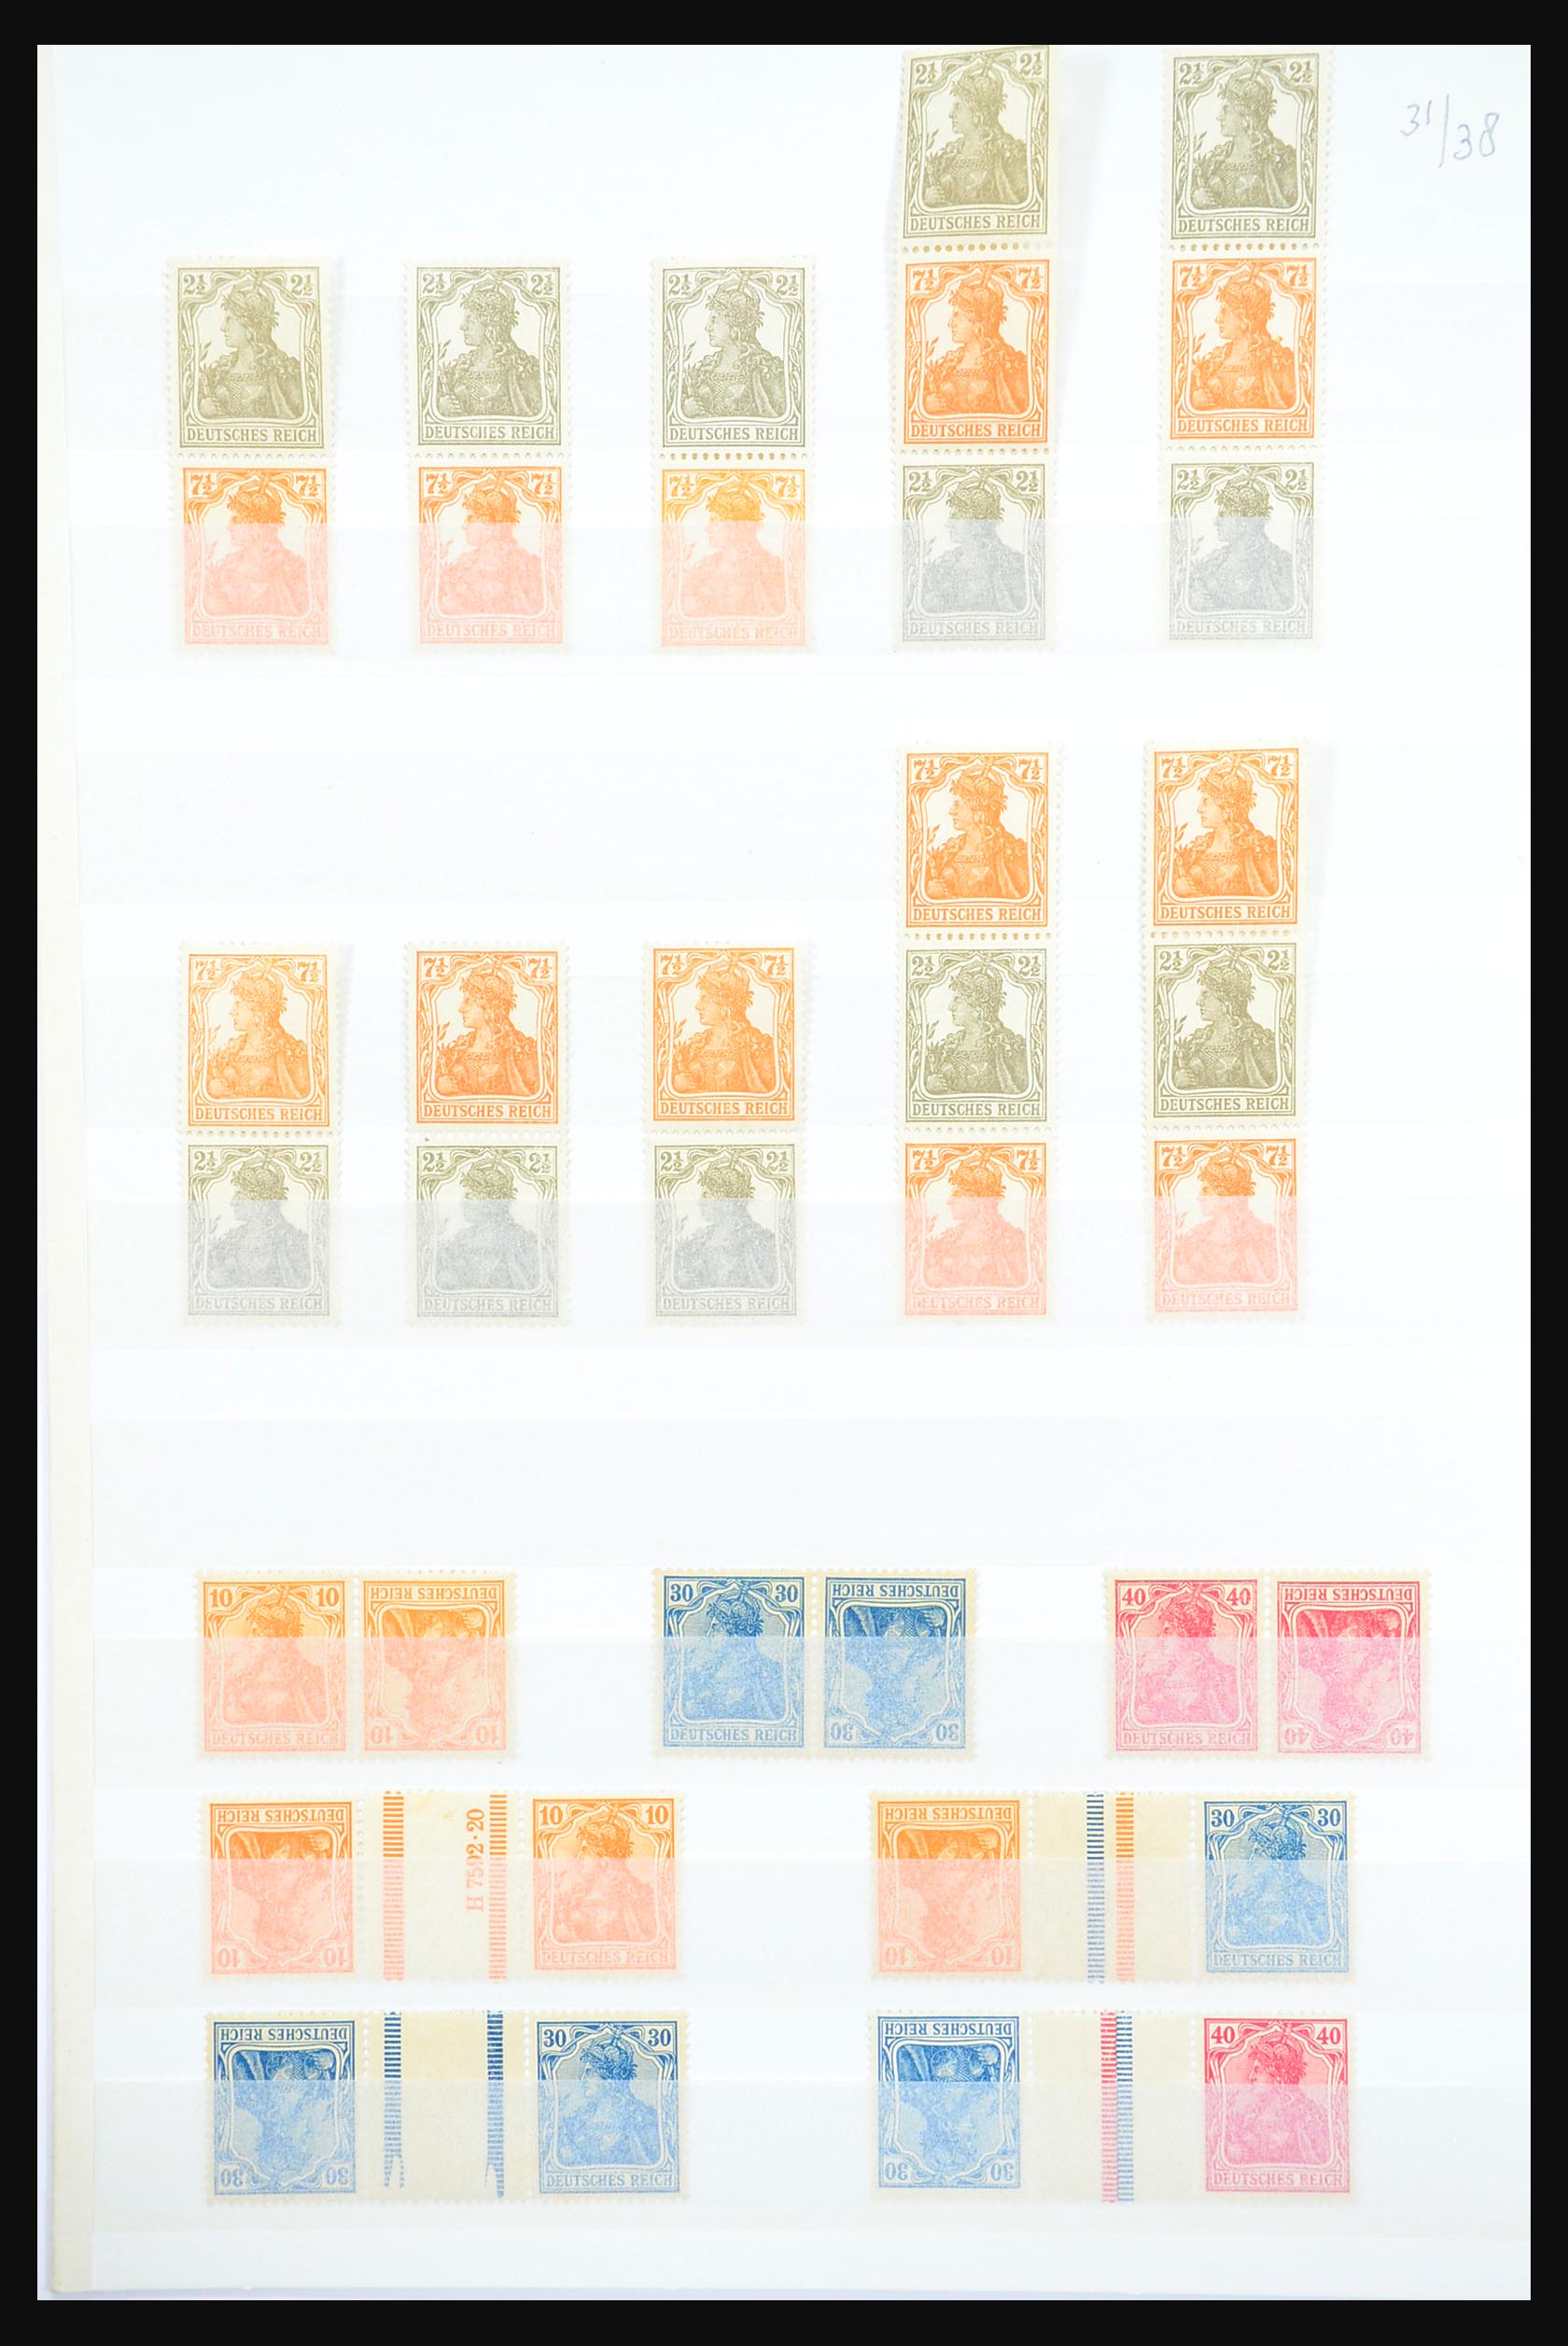 31391 002 - 31391 Duitse Rijk combinaties postfris 1913-1941.